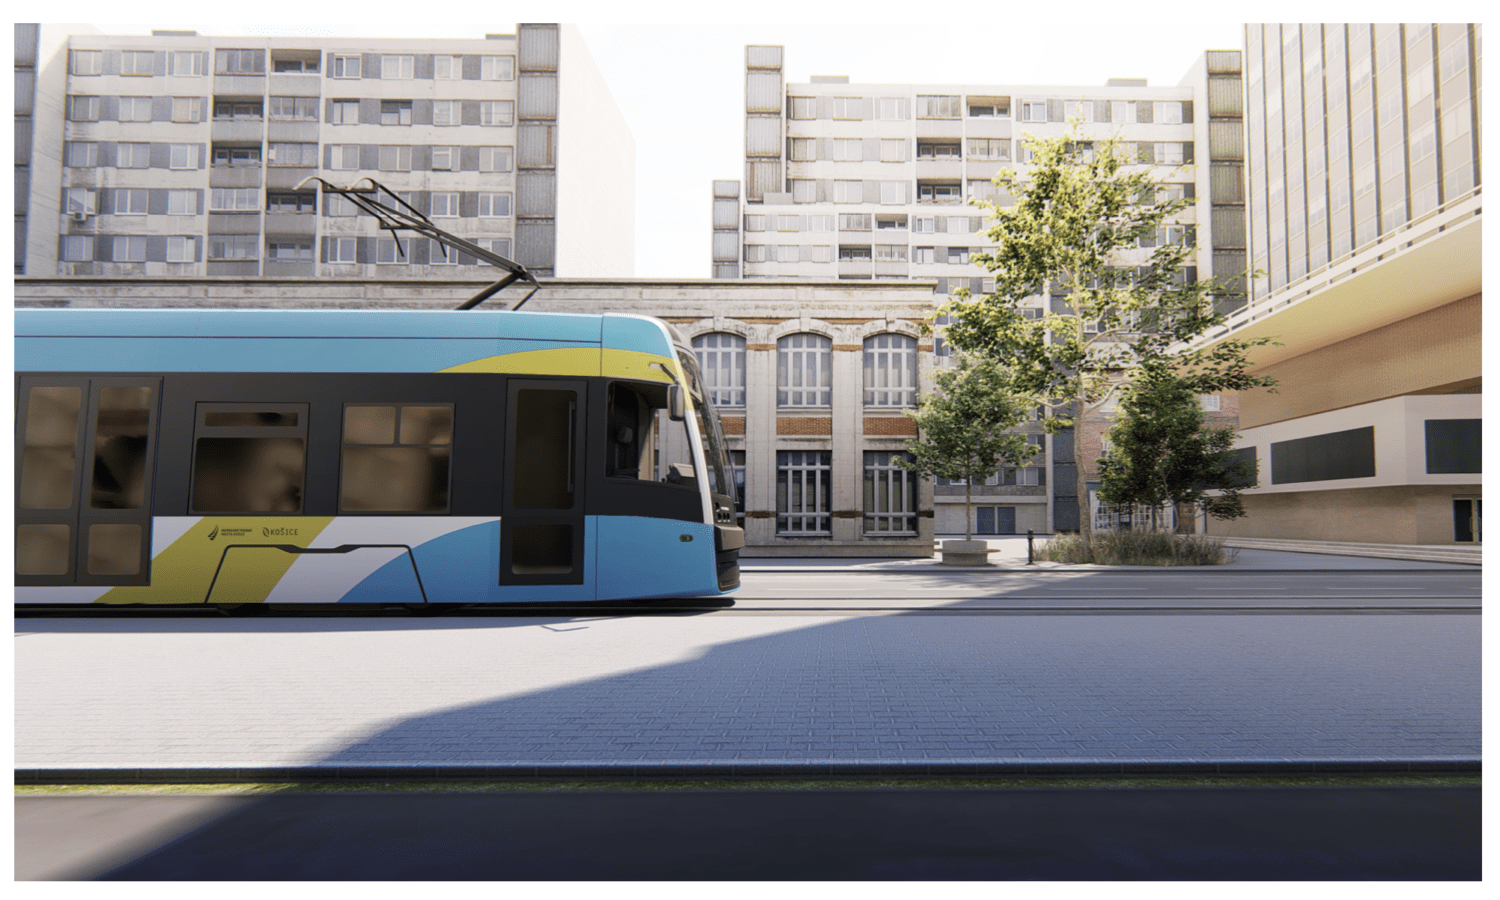 PESA nabídla do Košic jako do prvního města své nové řešení tramvají Twist se zvýšeným počtem bezbariérově přístupných míst. (foto: PESA)